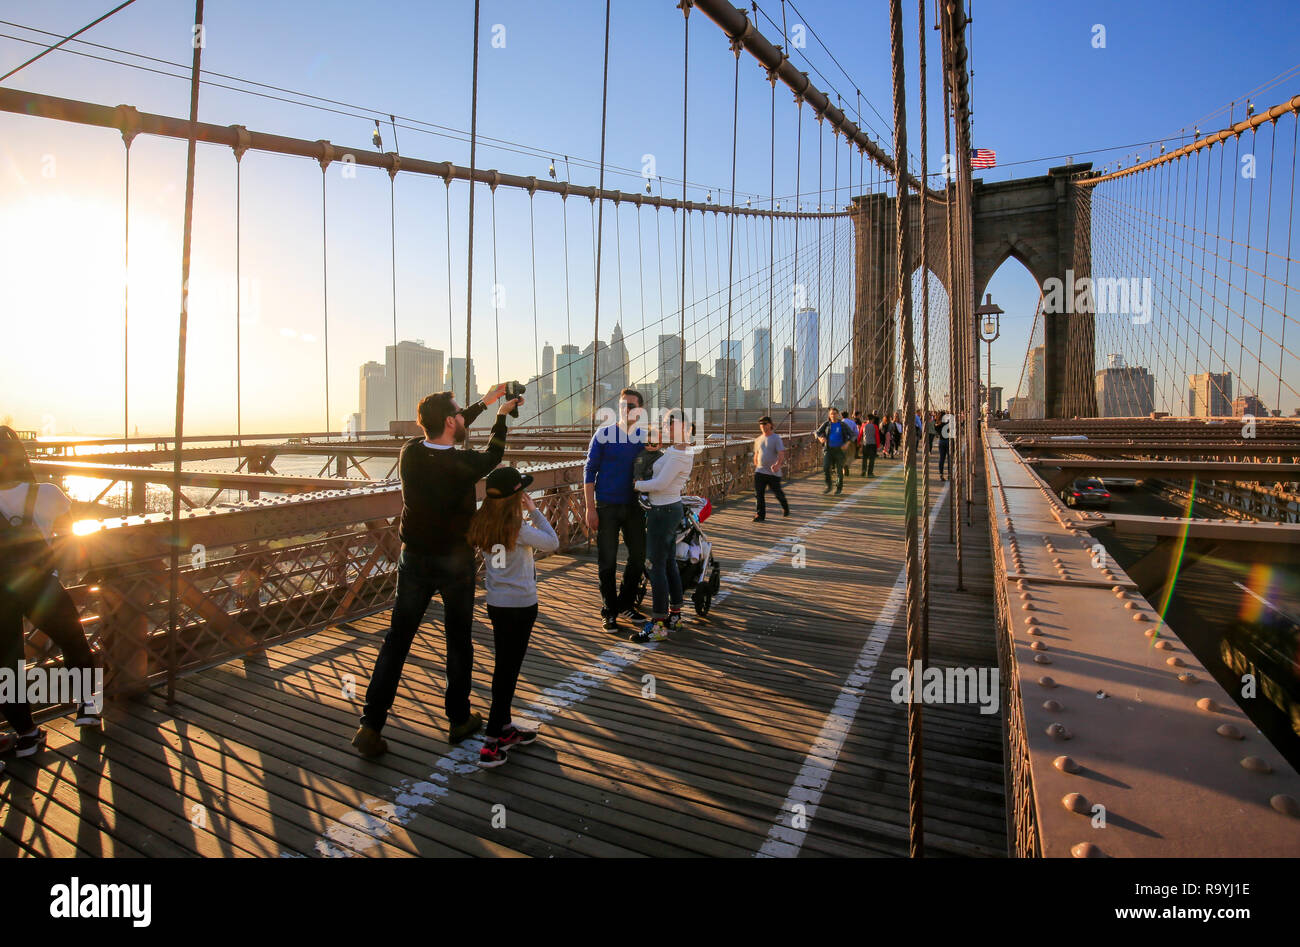 21.02.2018, New York City, New York, Vereinigte Staaten von Amerika - Menschen auf der Brooklyn Bridge, Blick auf die Manhattan Skyline mit Freedom To Stock Photo